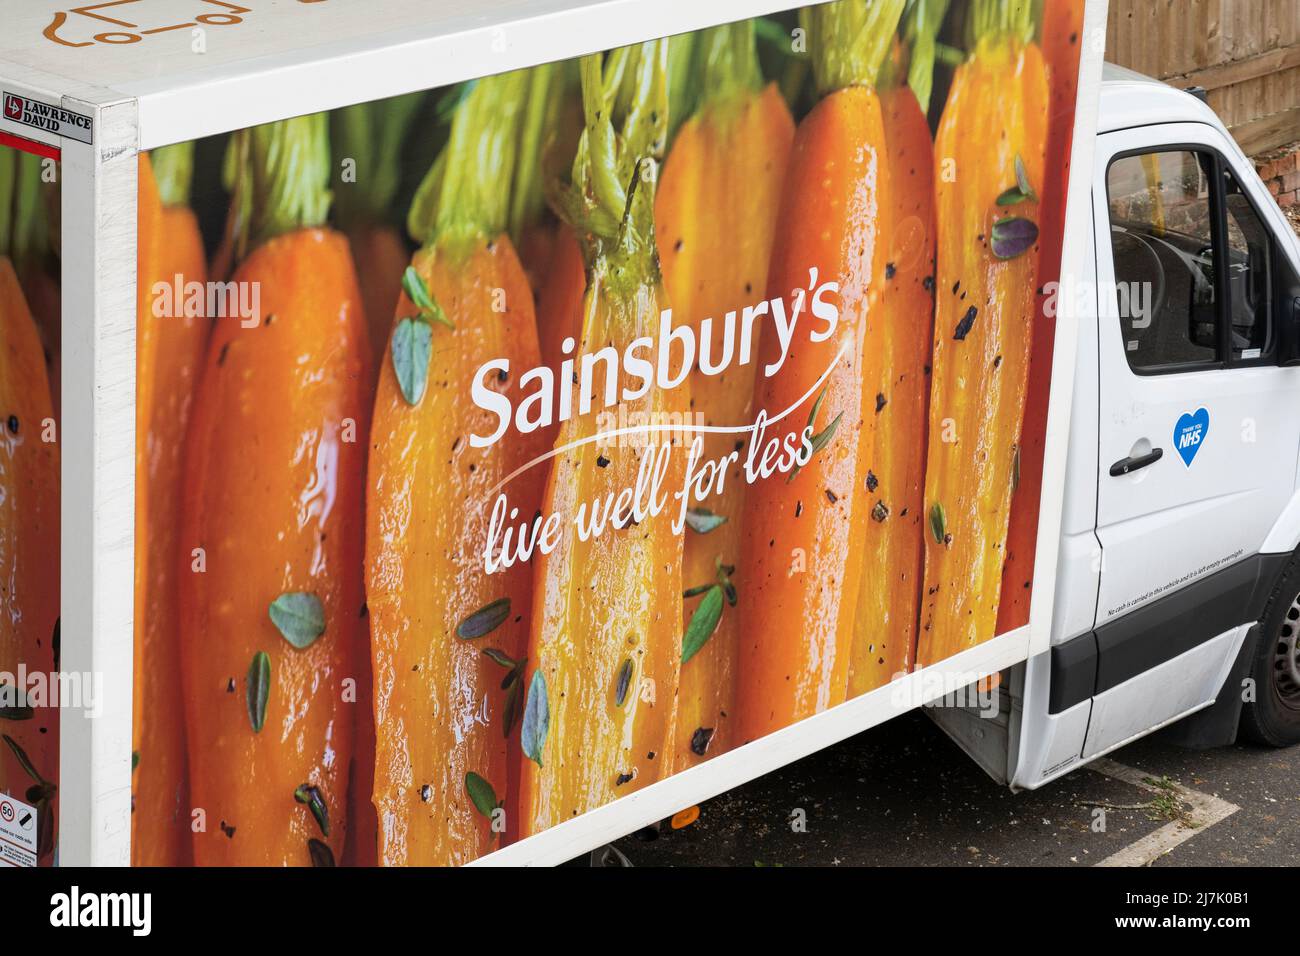 Une fourgonnette de livraison de courses en ligne Sainsbury garrée pour livraison de nourriture avec le logo Sainsburys à Basingstoke. Angleterre Banque D'Images